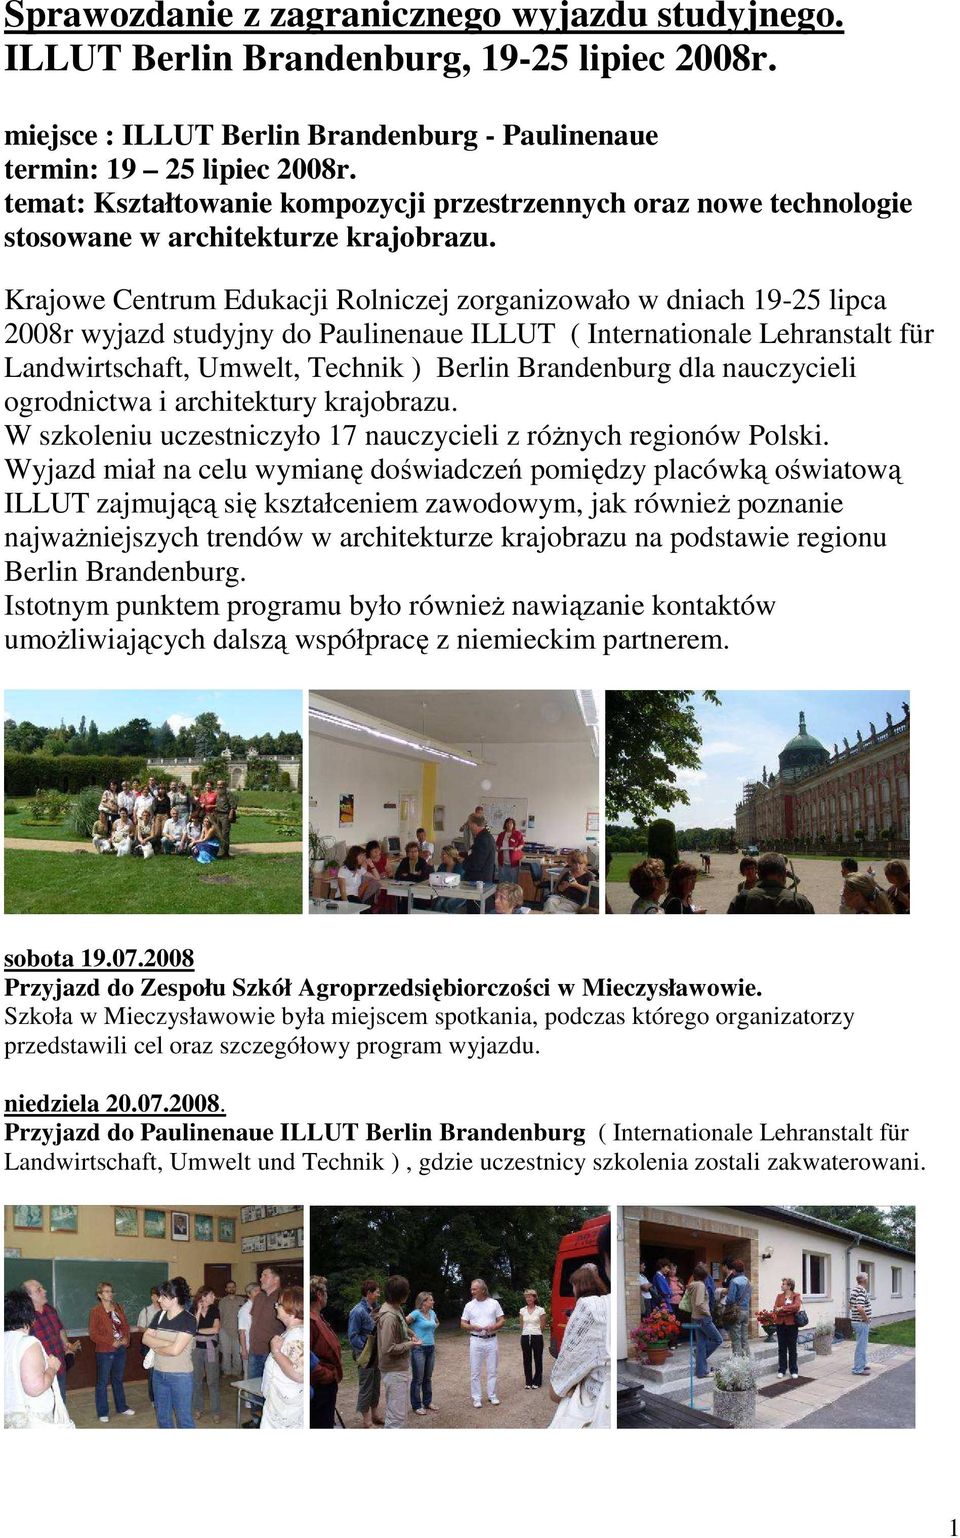 Krajowe Centrum Edukacji Rolniczej zorganizowało w dniach 19-25 lipca 2008r wyjazd studyjny do Paulinenaue ILLUT ( Internationale Lehranstalt für Landwirtschaft, Umwelt, Technik ) Berlin Brandenburg